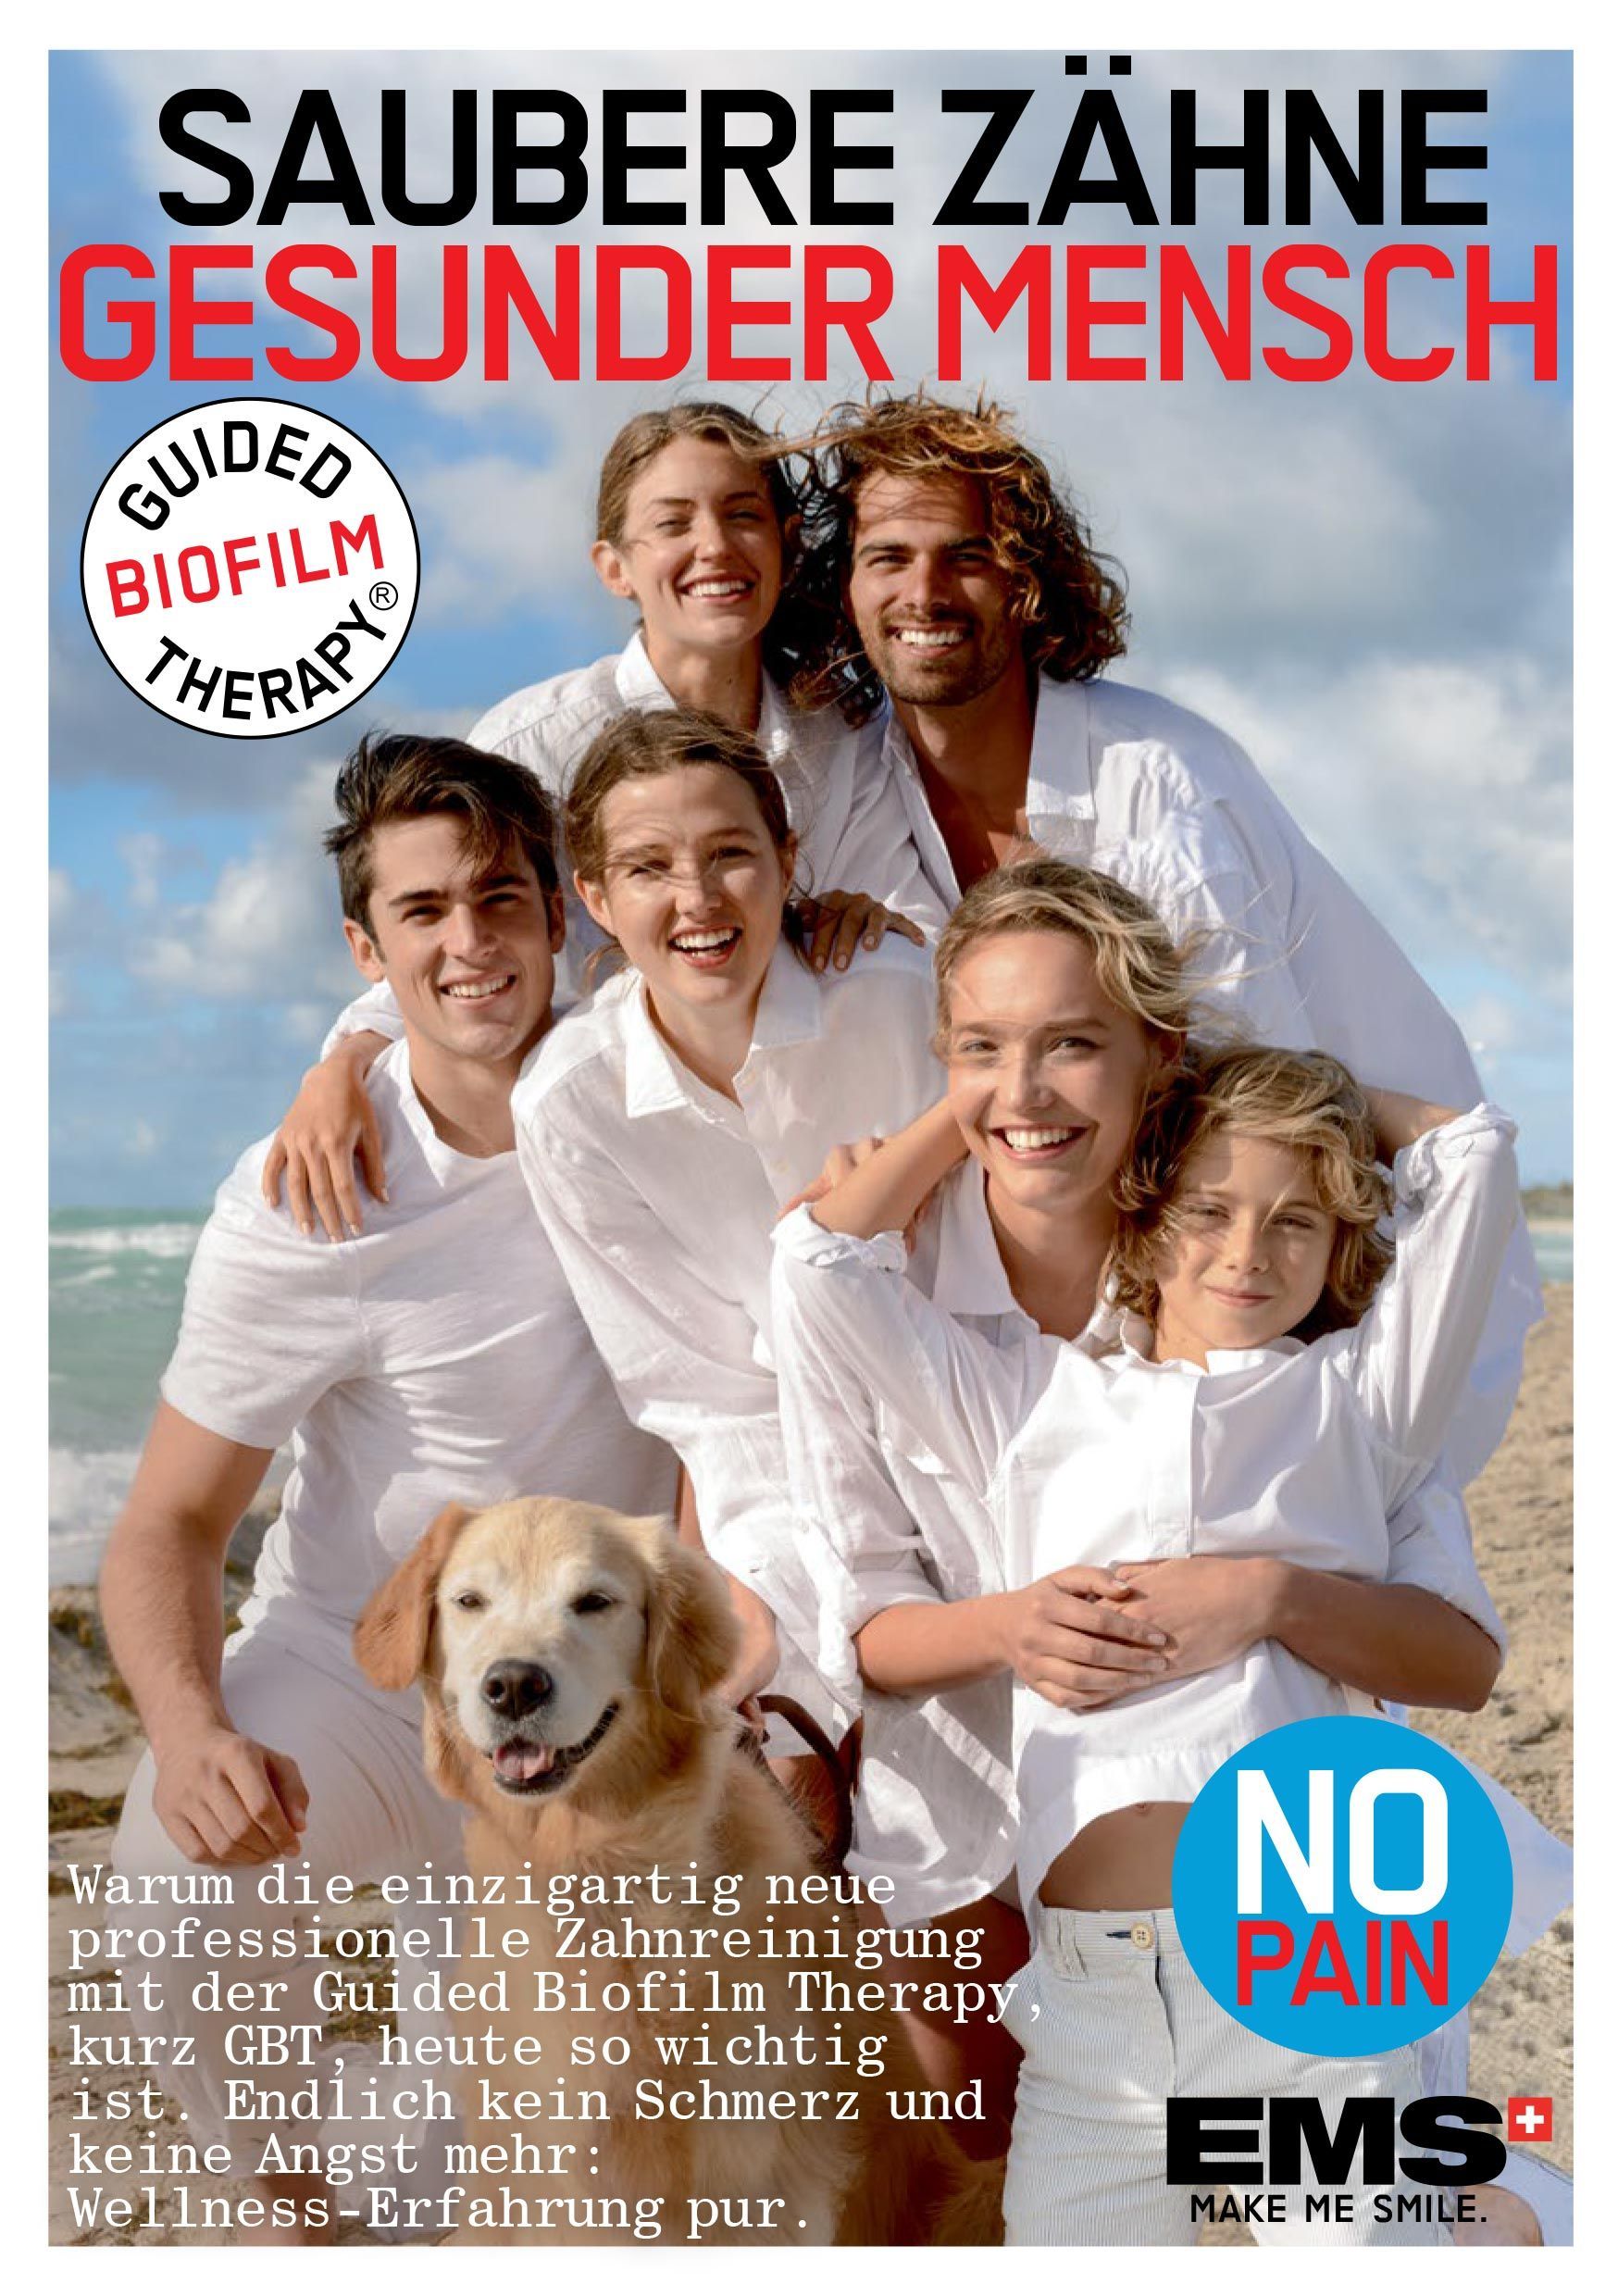 eine Gruppe von Menschen posiert mit einem Hund auf einem Flyer mit der Aufschrift saubere Zähne gesunder Mensch